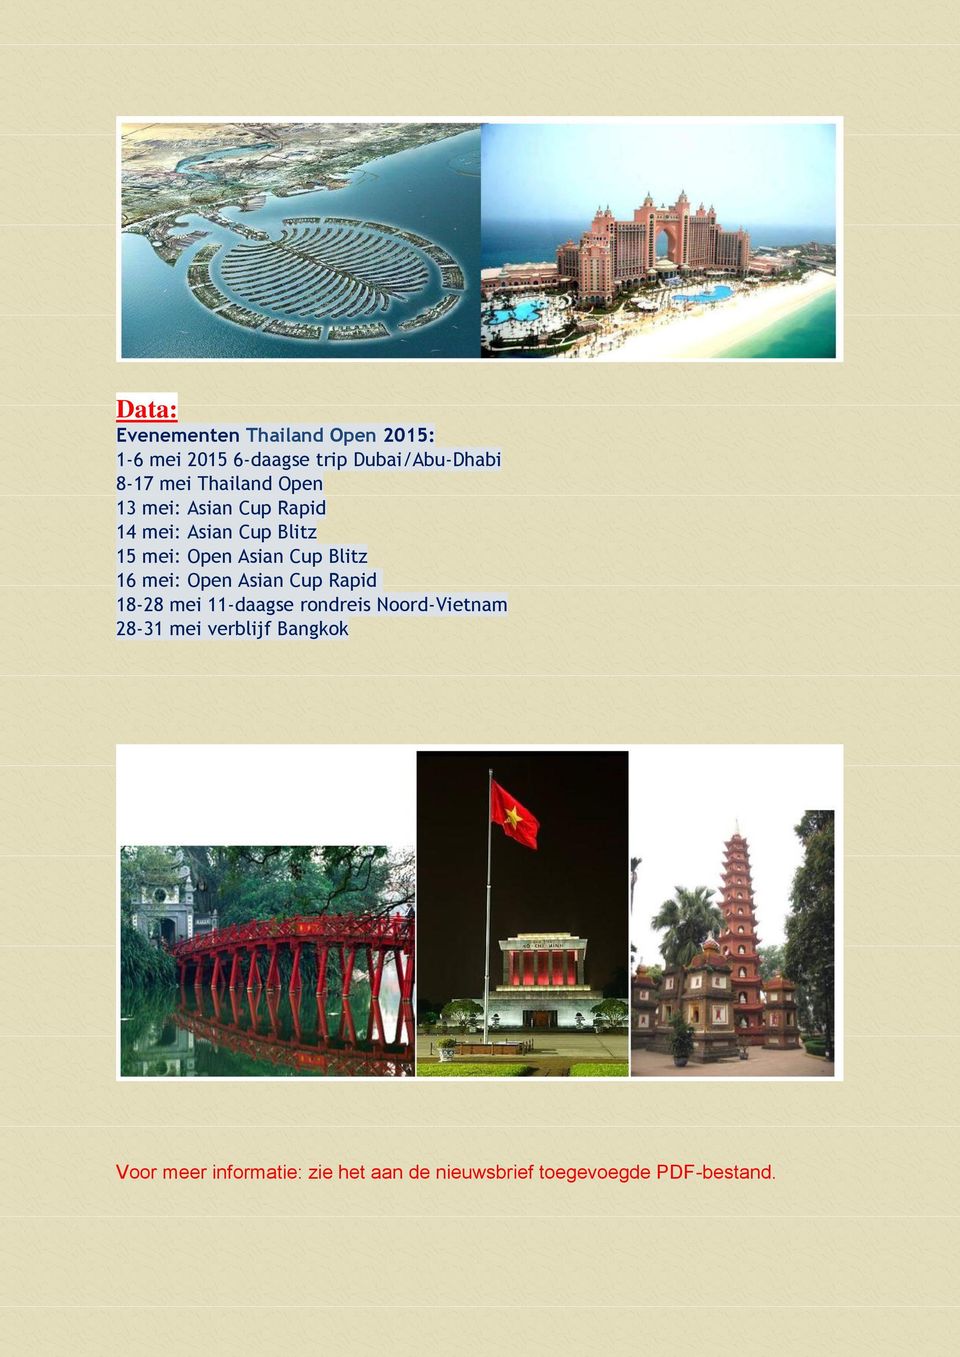 Blitz 16 mei: Open Asian Cup Rapid 18-28 mei 11-daagse rondreis Noord-Vietnam 28-31 mei